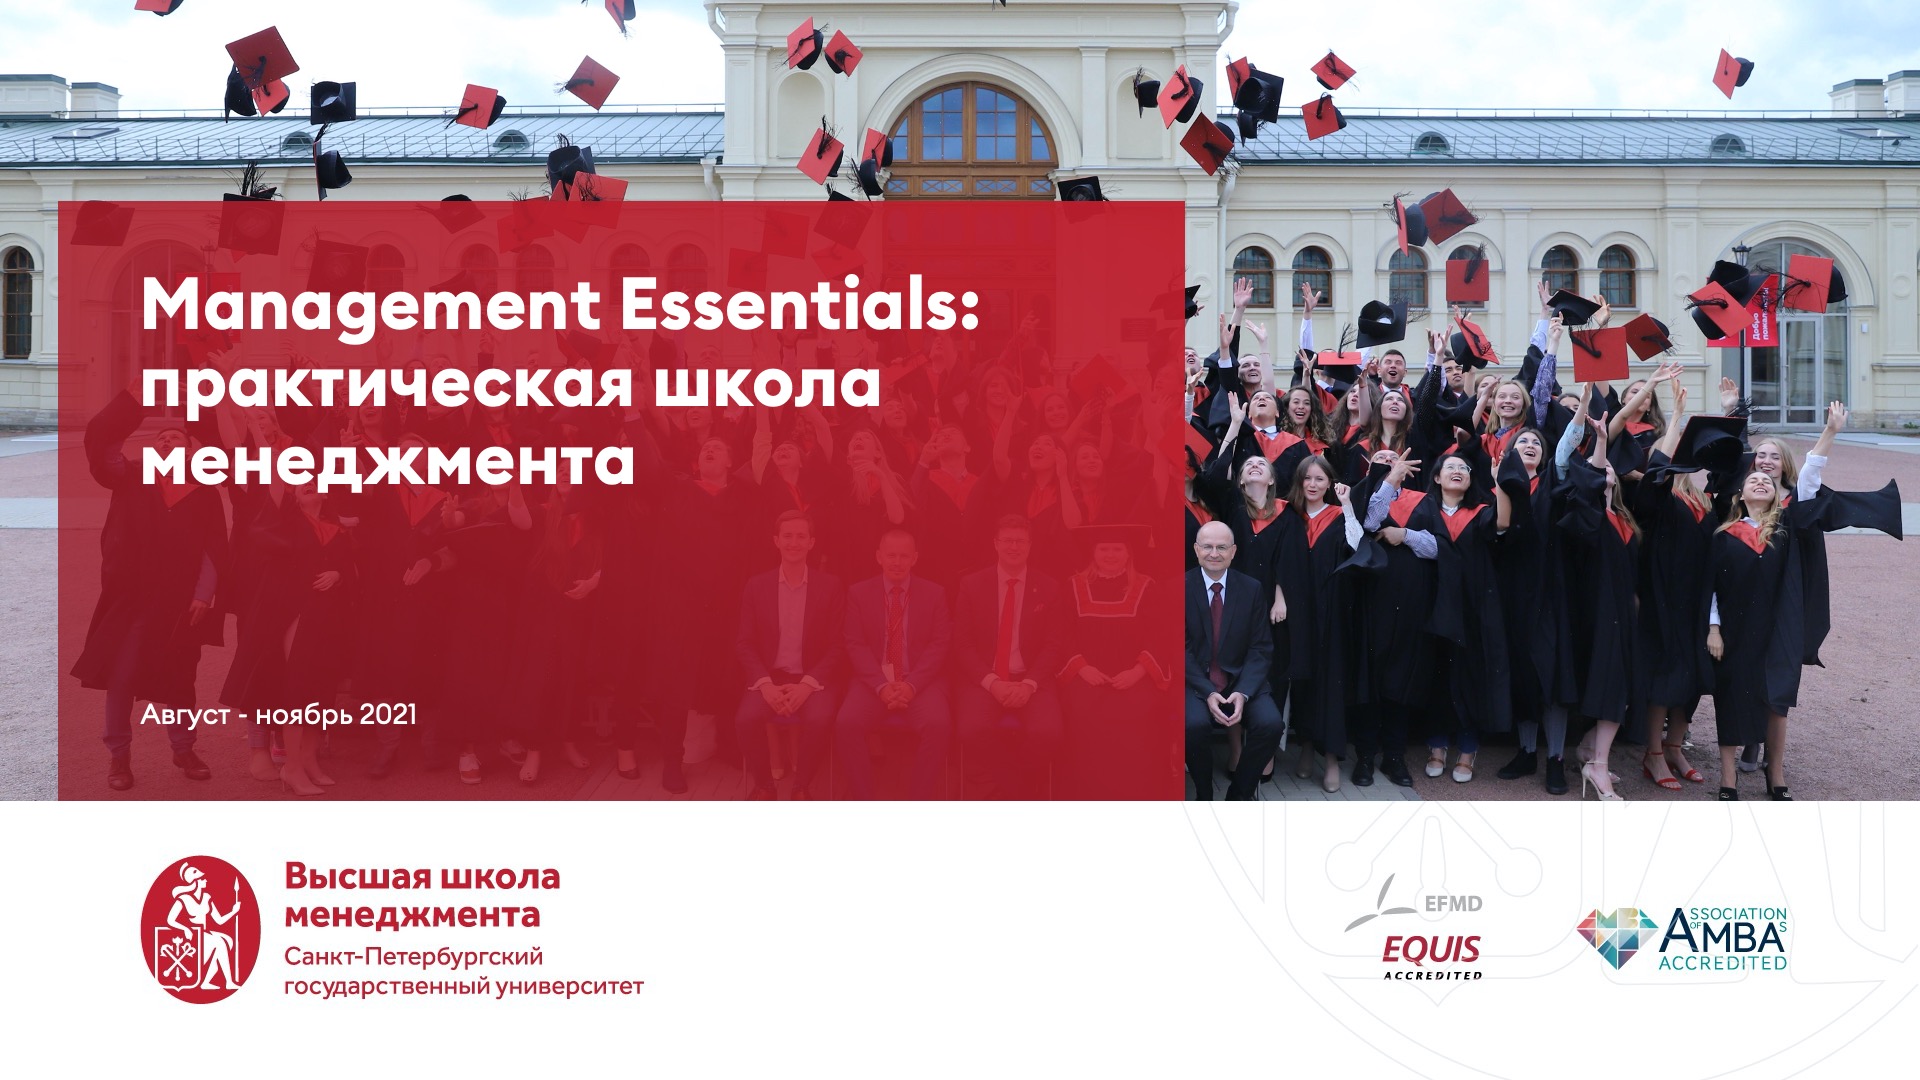 Management Essentials: Практическая школа менеджмента для ВТБ Группа 0